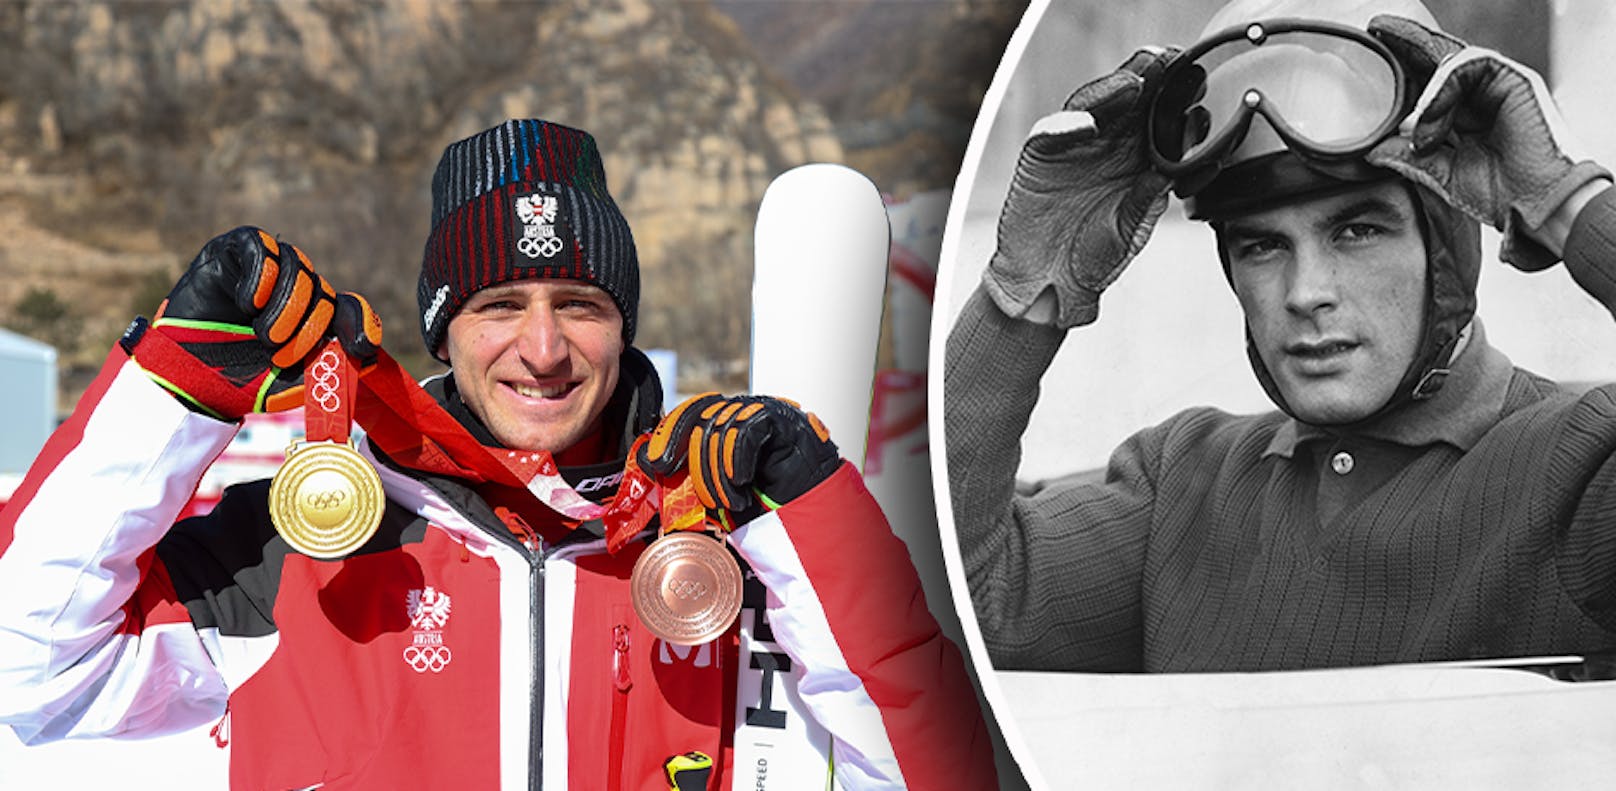 Matthias Mayer – Gold im Super-G. Mit seiner dritten Olympischen Goldmedaille und der Bronzenen aus der Abfahrt überholte er Österreichs Ski-Legende Toni Sailer (ebenfalls Triple-Olympiasieger). Mayer ist nun der erfolgreichste Alpine in der heimischen Olympia-Geschichte.